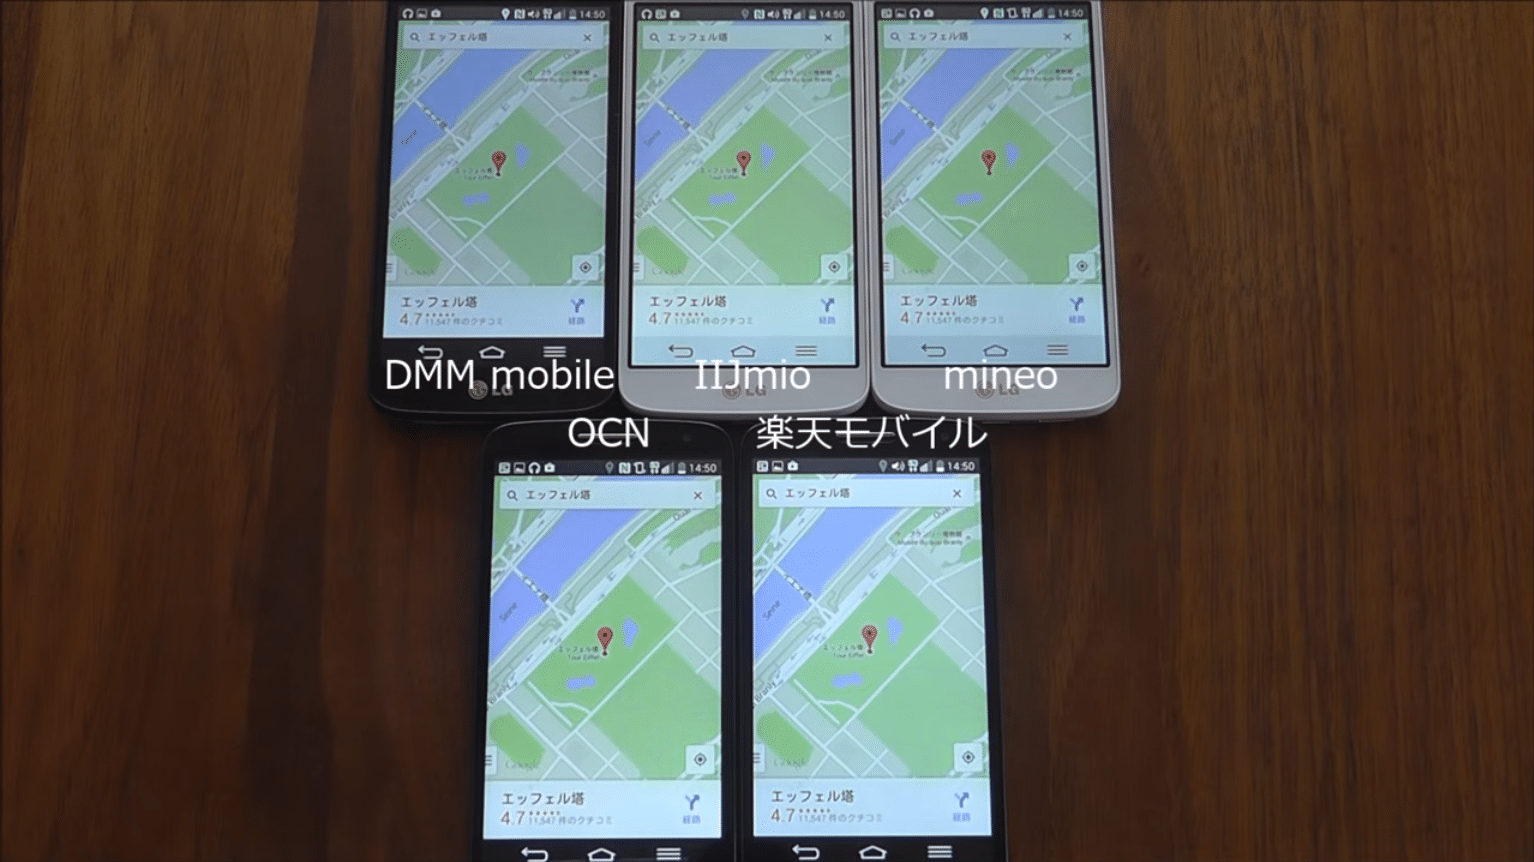 格安SIM MVNO ドコモ系比較とおすすめ7選【2019年8月29日】